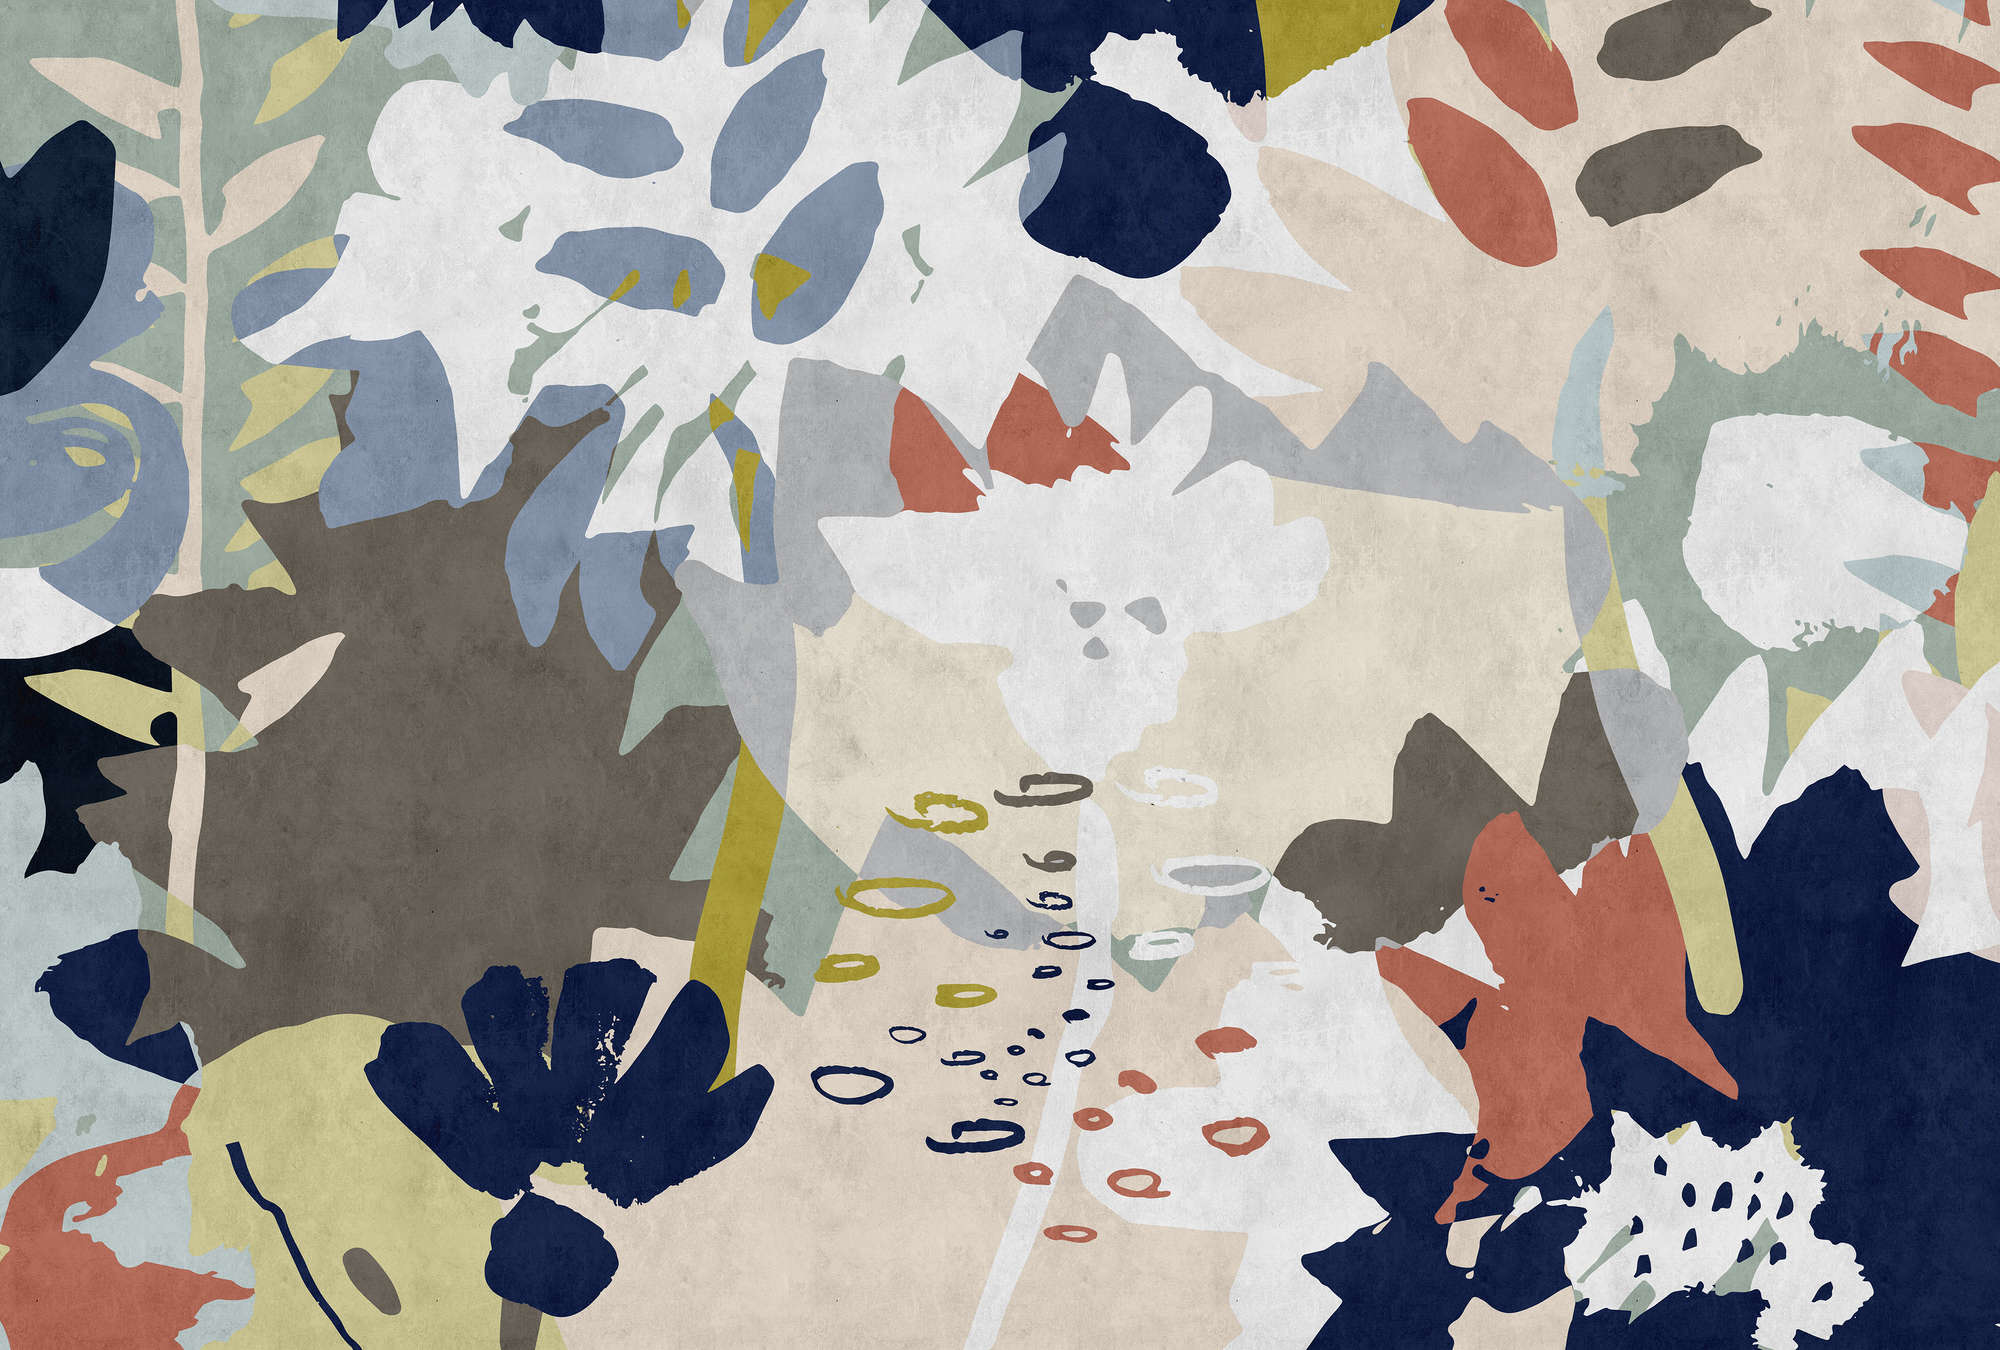             Floral Collage 4 - Carta da parati con motivo a foglie colorate - Natura qualita consistenza in carta assorbente - Blu, Marrone | Vello liscio opaco
        